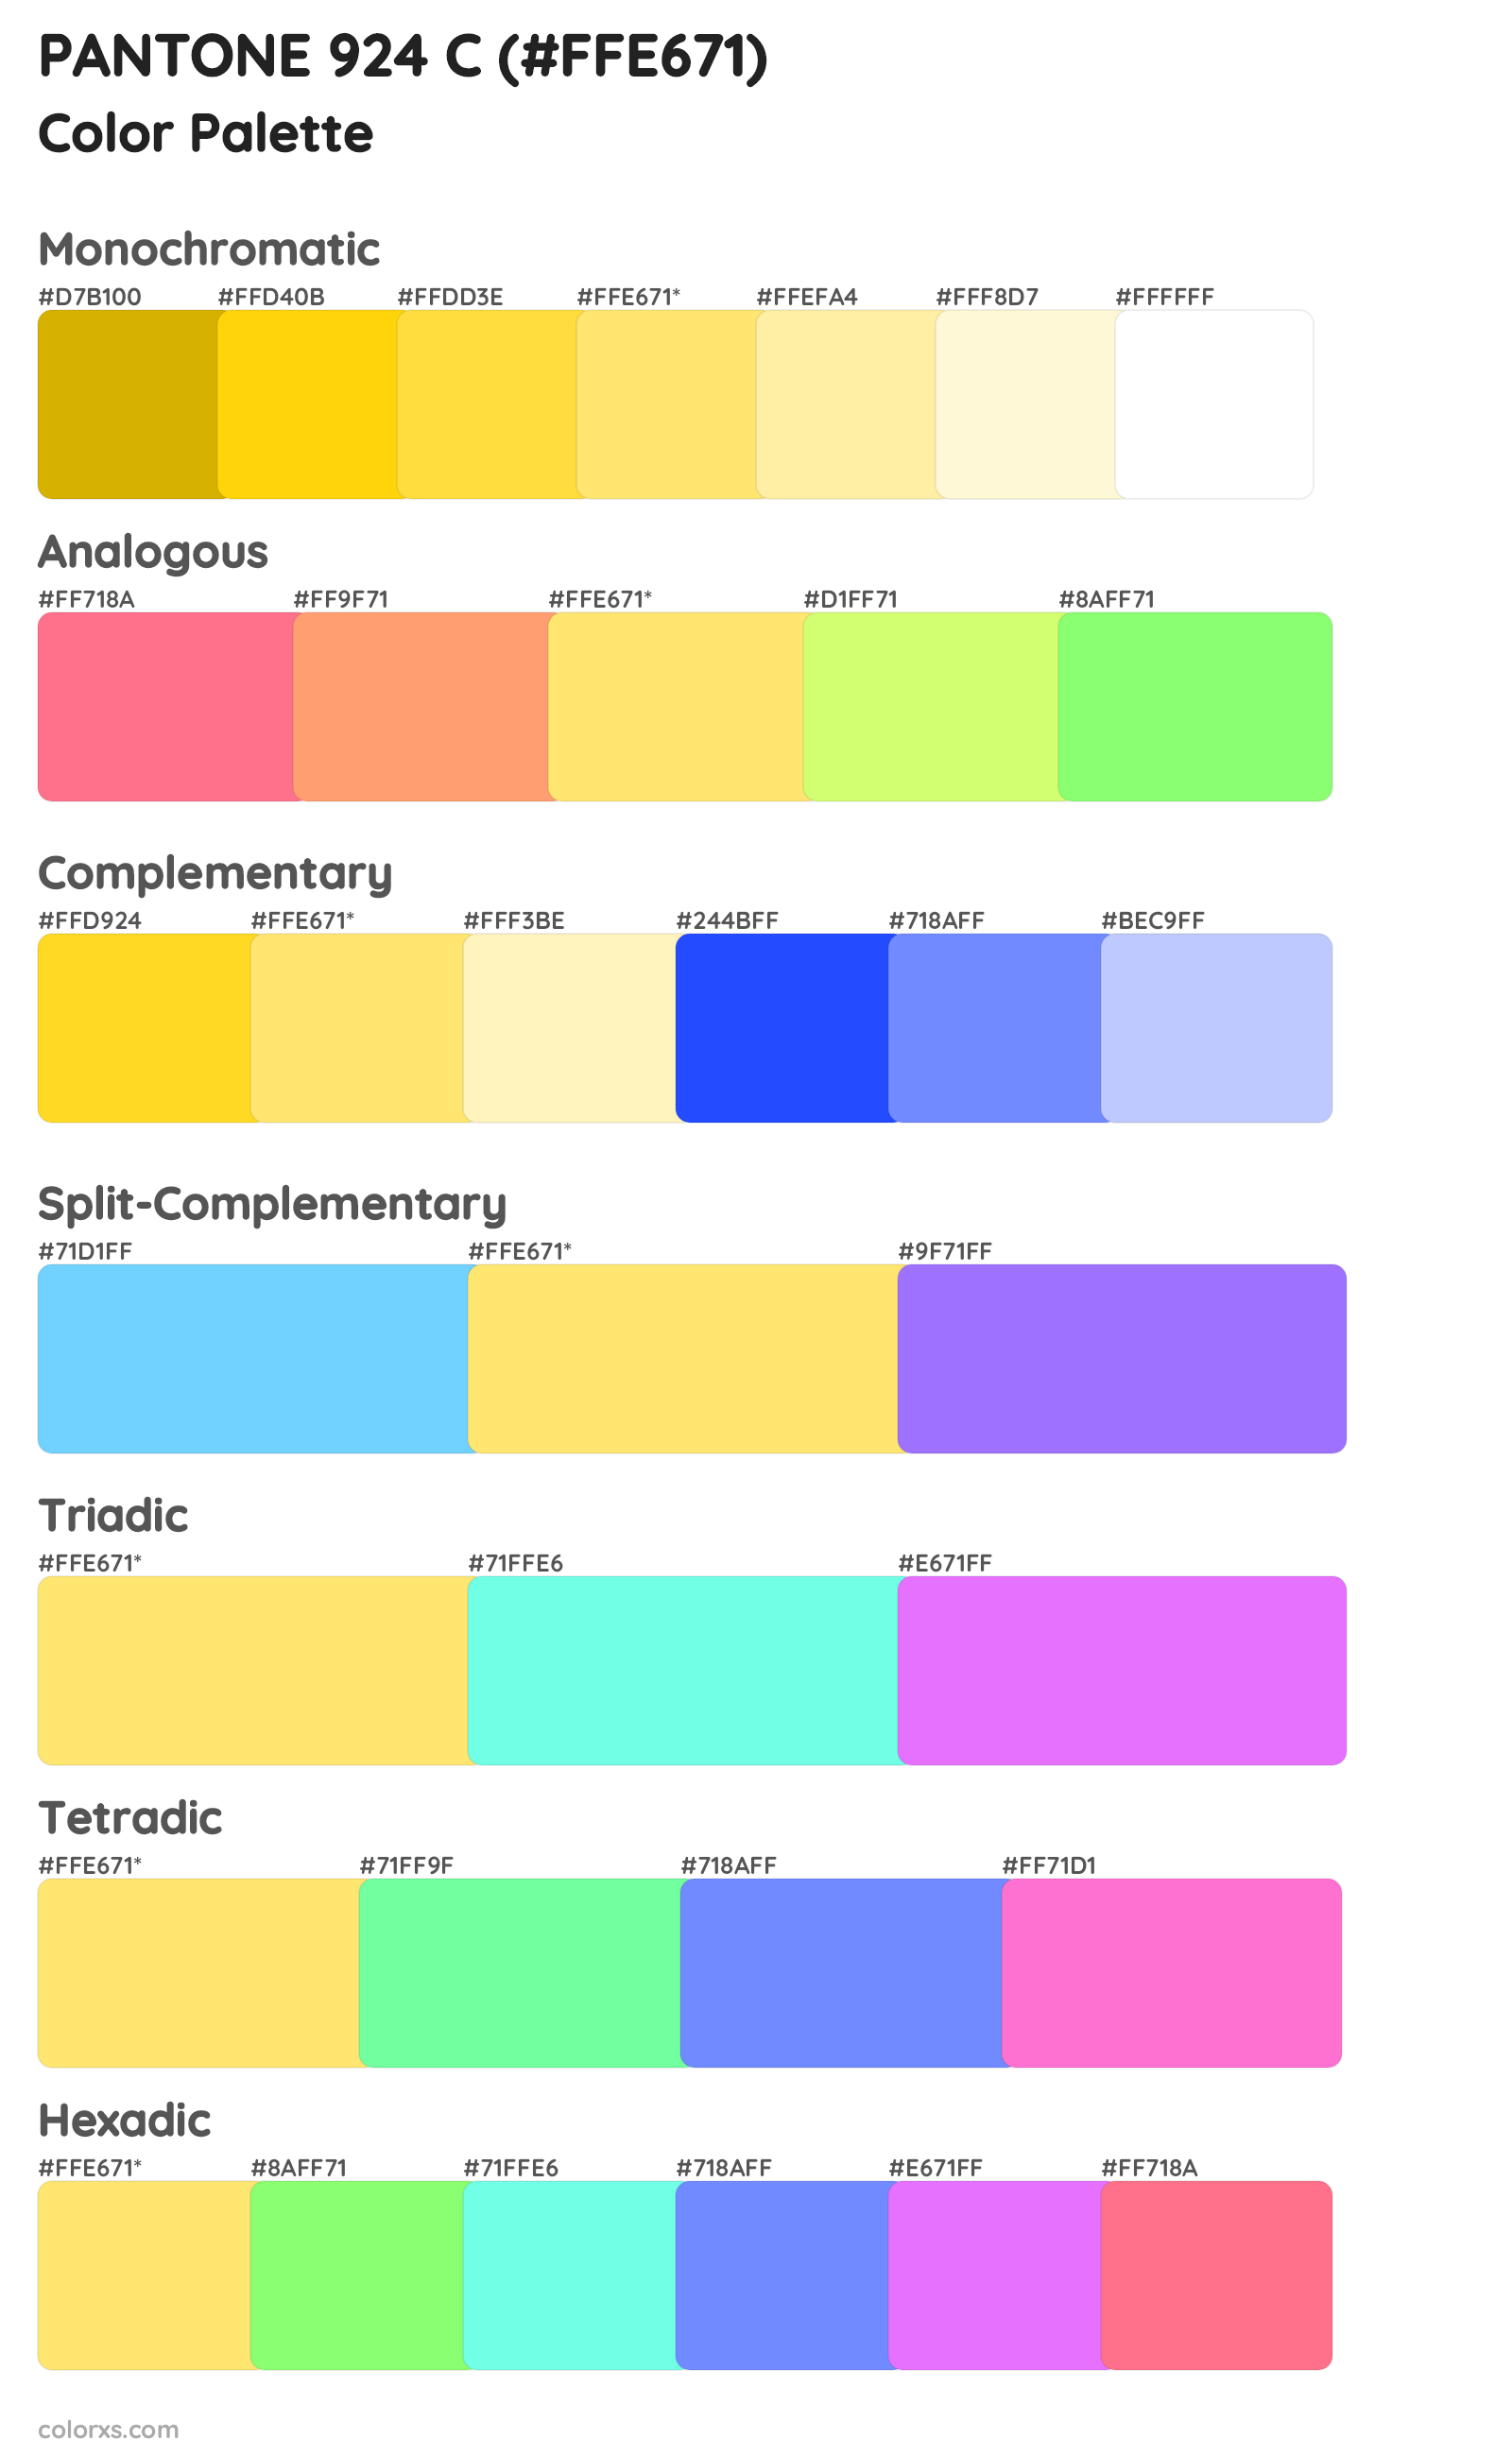 PANTONE 924 C color palettes and color scheme combinations